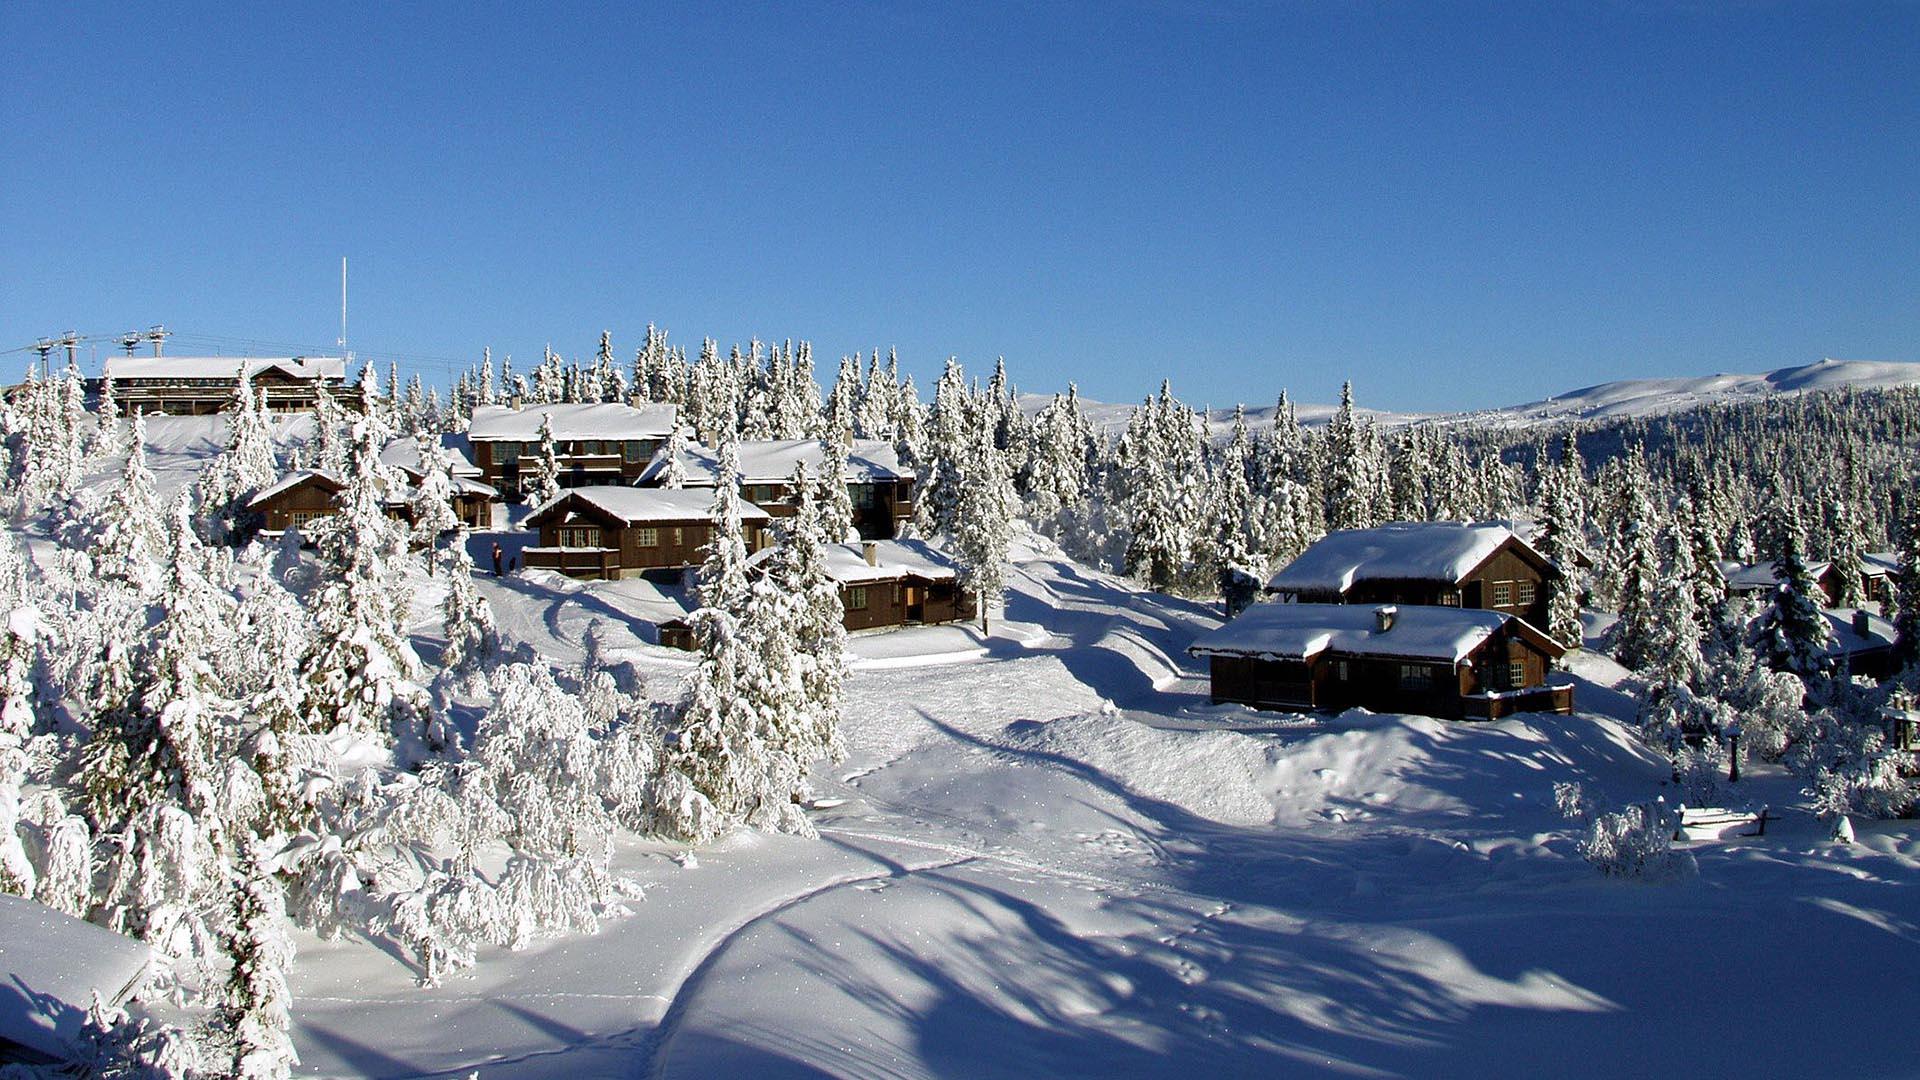 Hütten an einem sonnigen Hang in offenem Fichtenwald an der Baumgrense. Es ist Winter und es liegt viel Schnee auf Dächern und Bäumen.